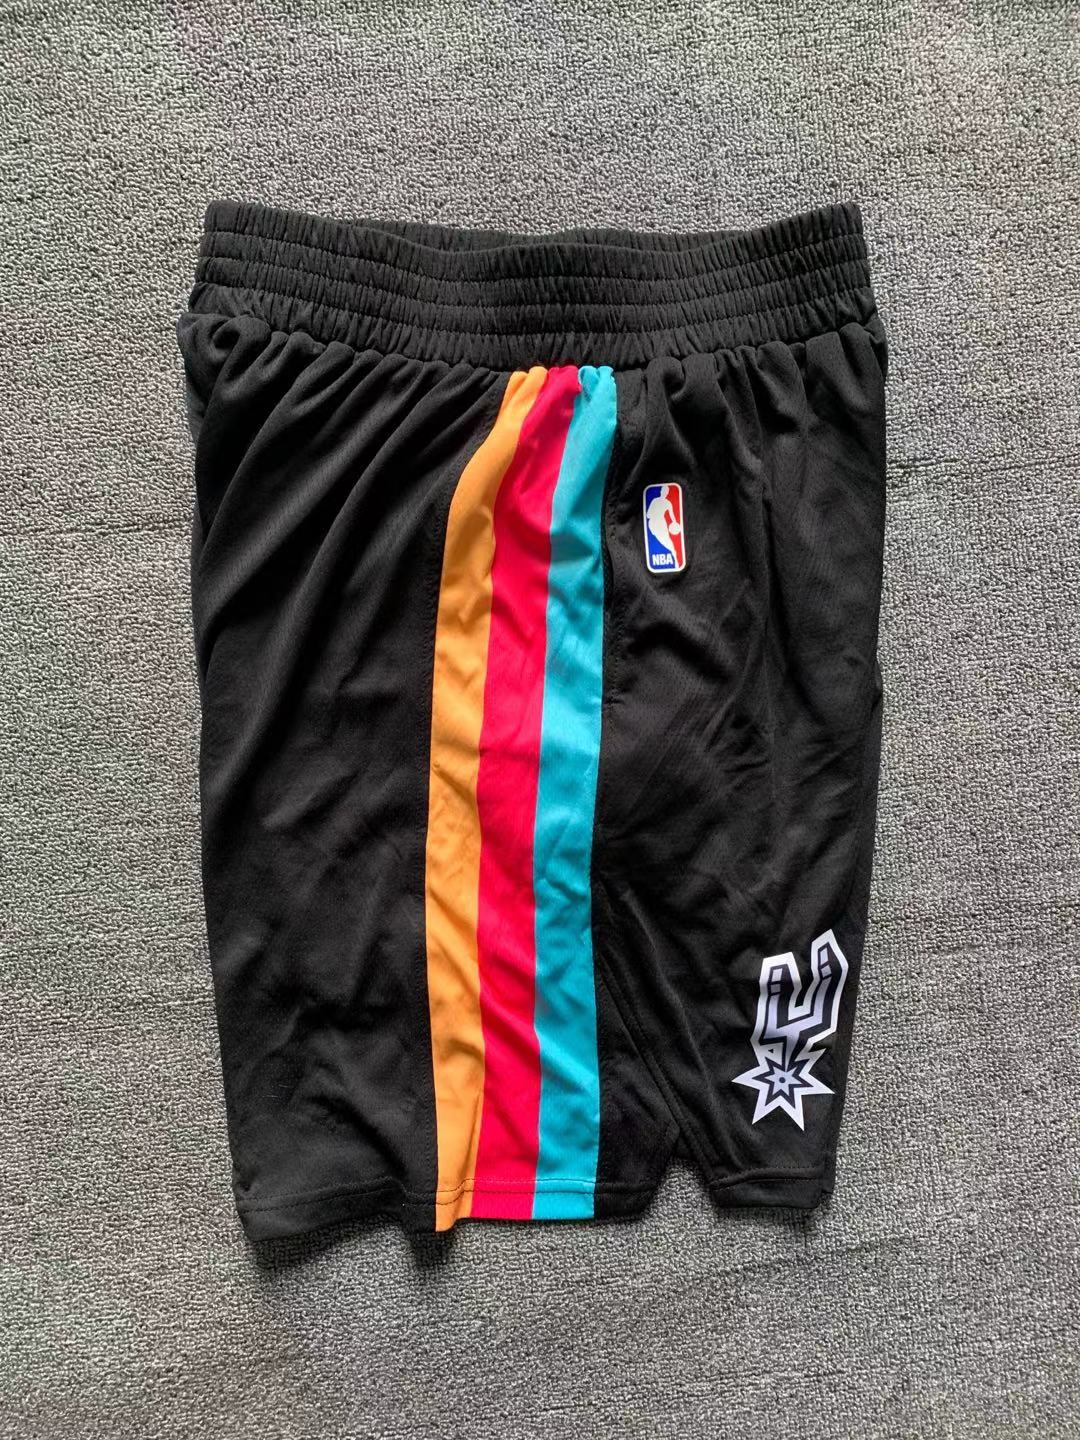 Spurs city black Shorts